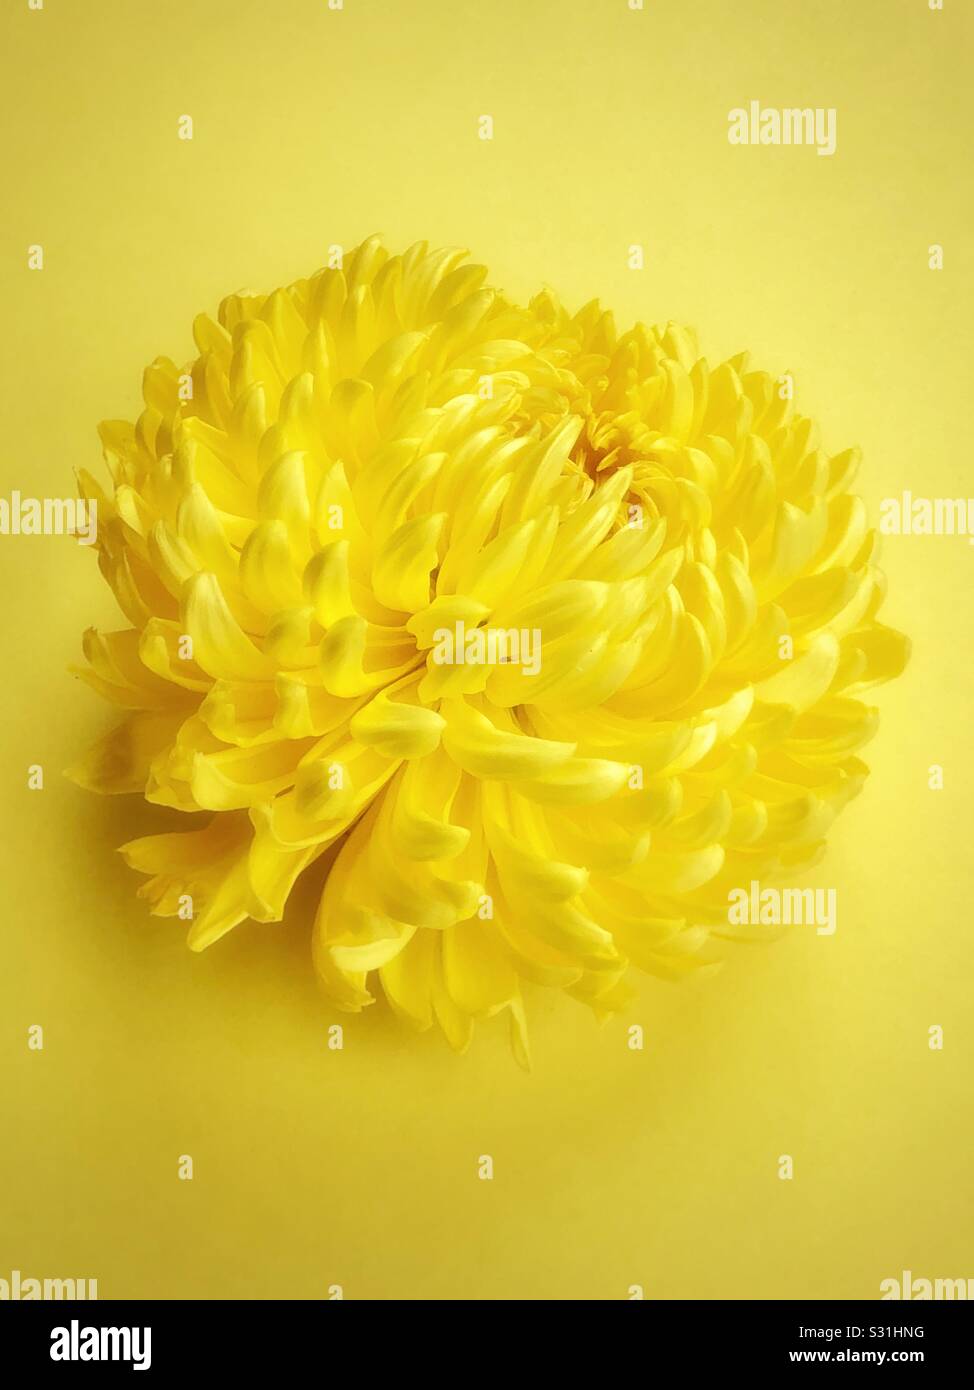 Chrysanthemum yellow glow Stock Photo